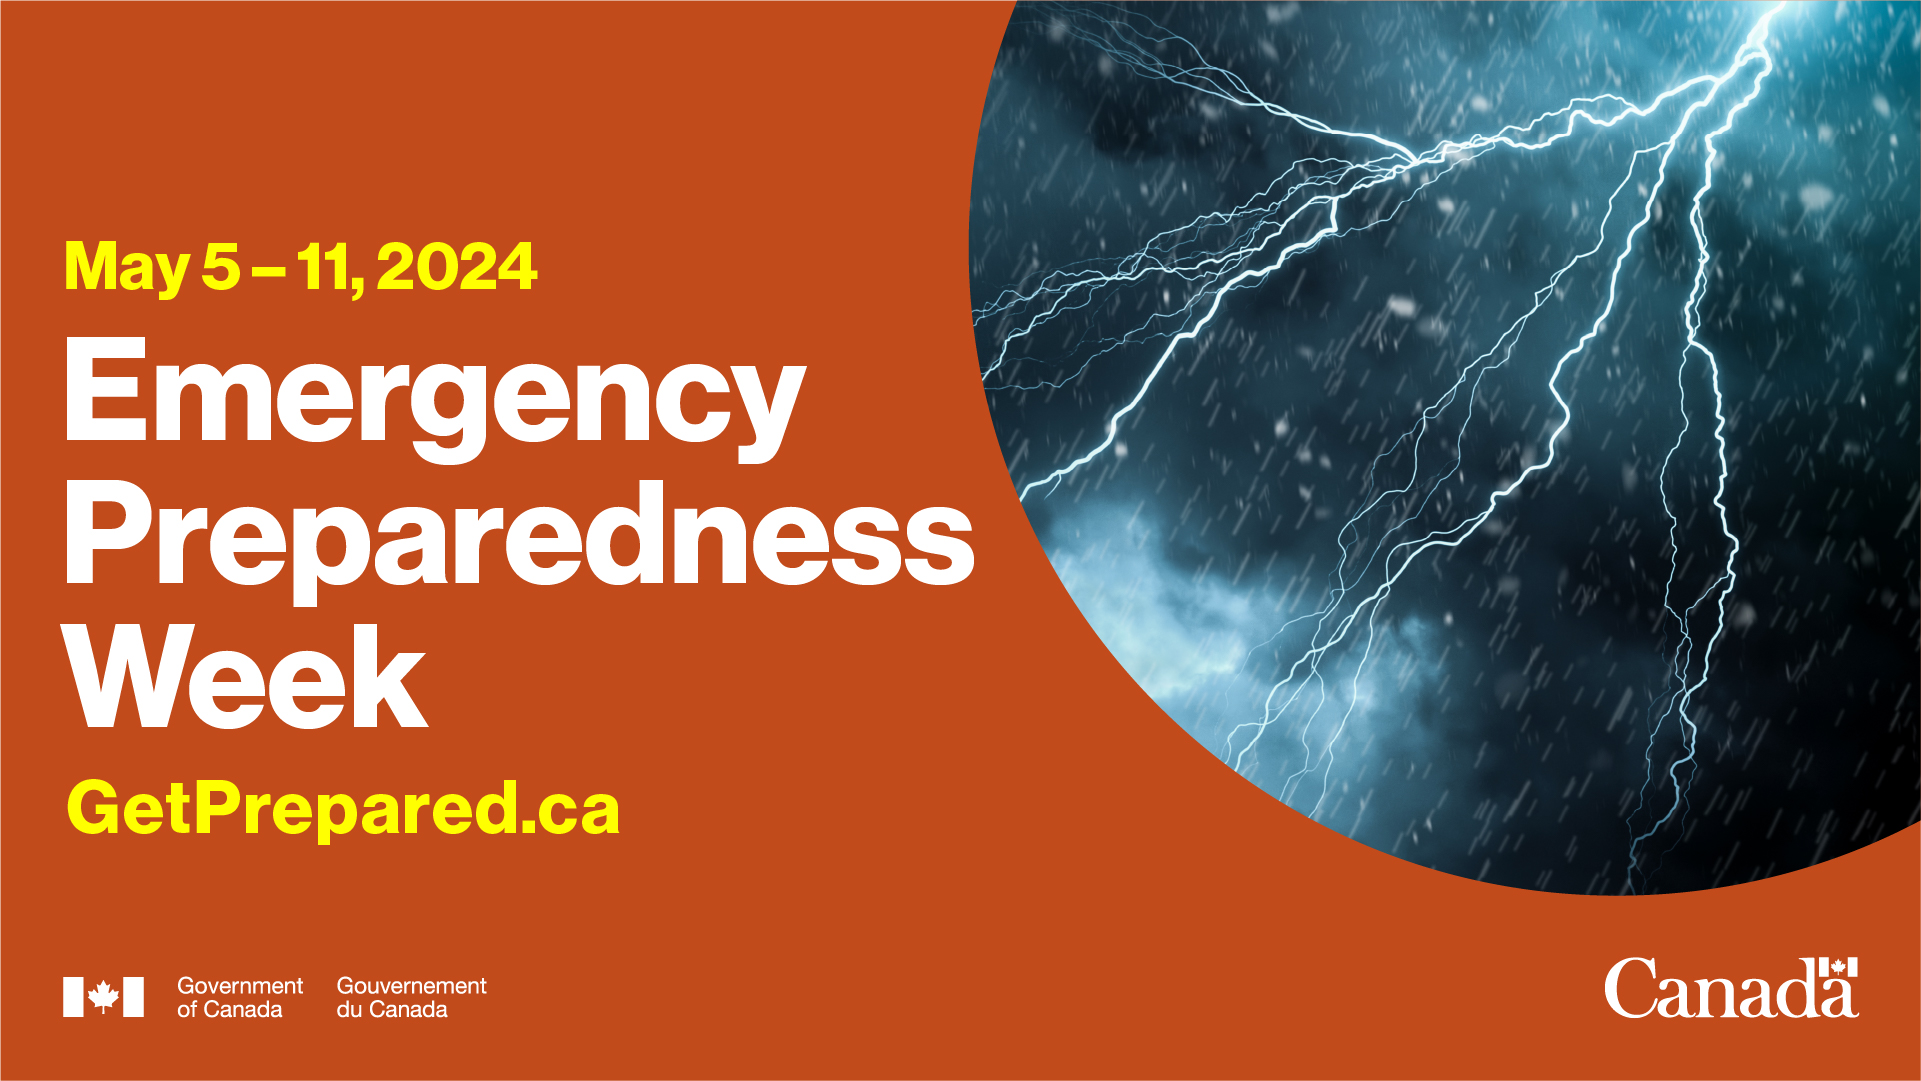 May 5 -11 is Emergency Preparedness Week 2024